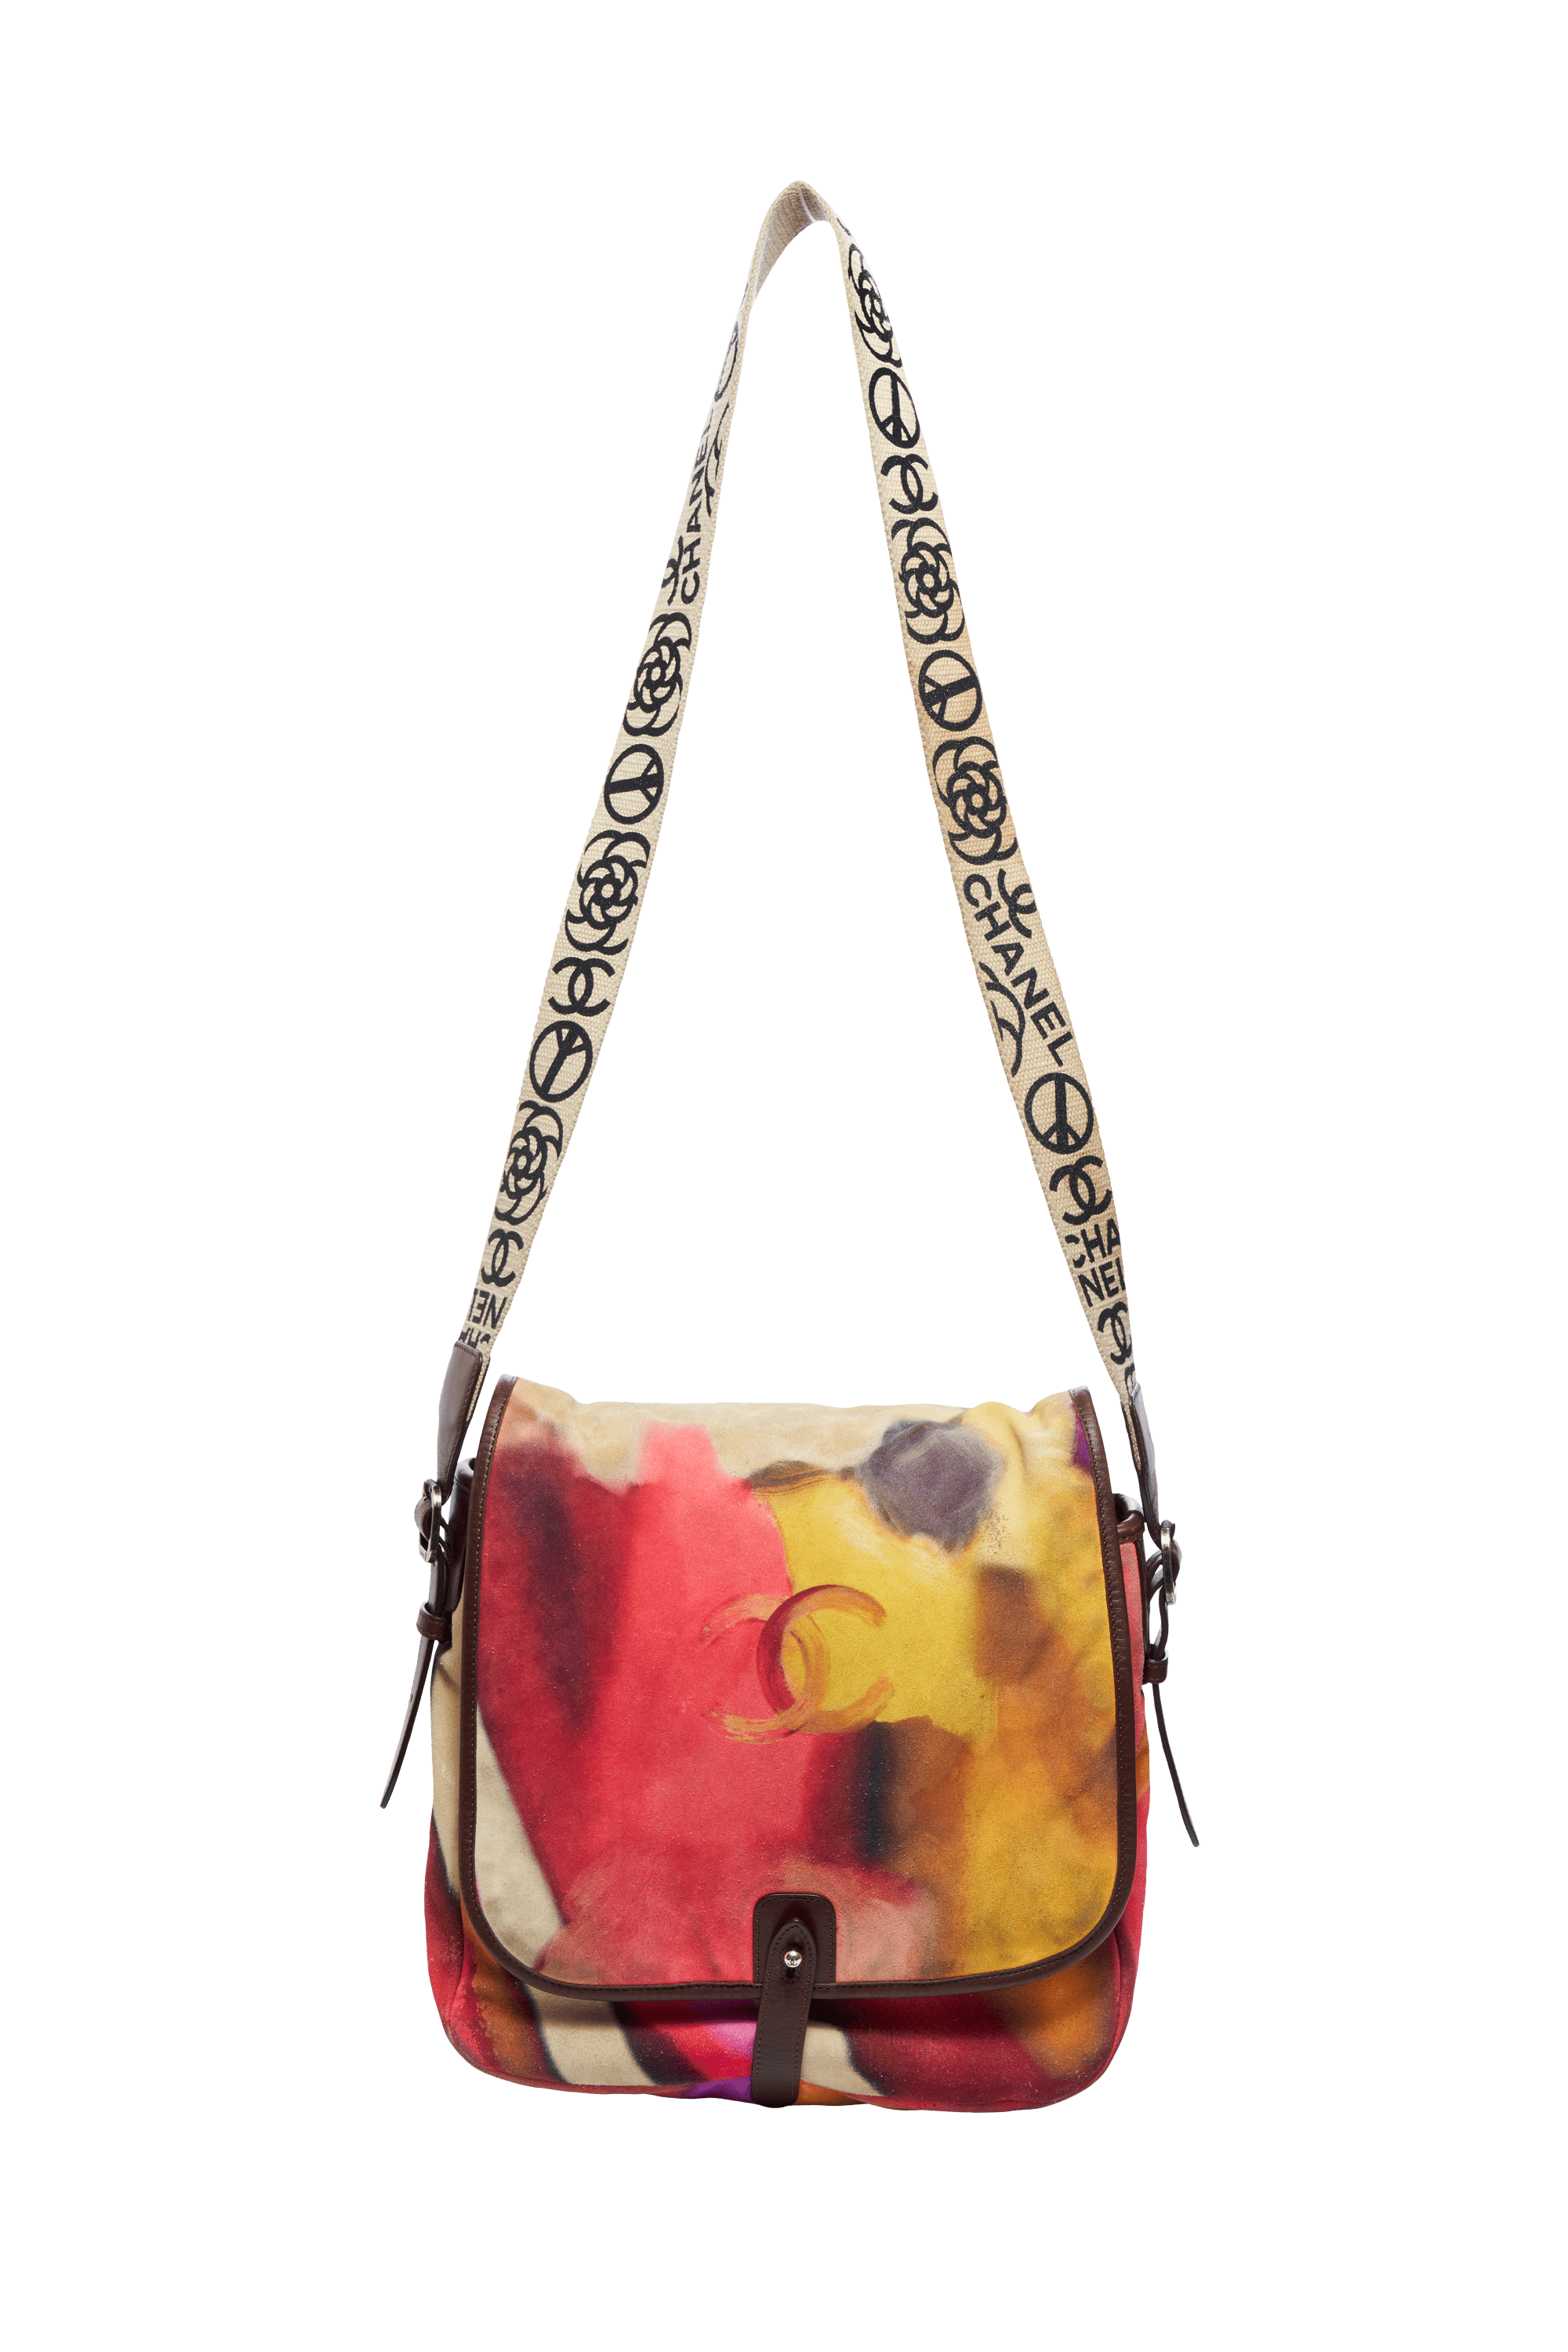 Chanel Flower Power Messenger Bag 2015